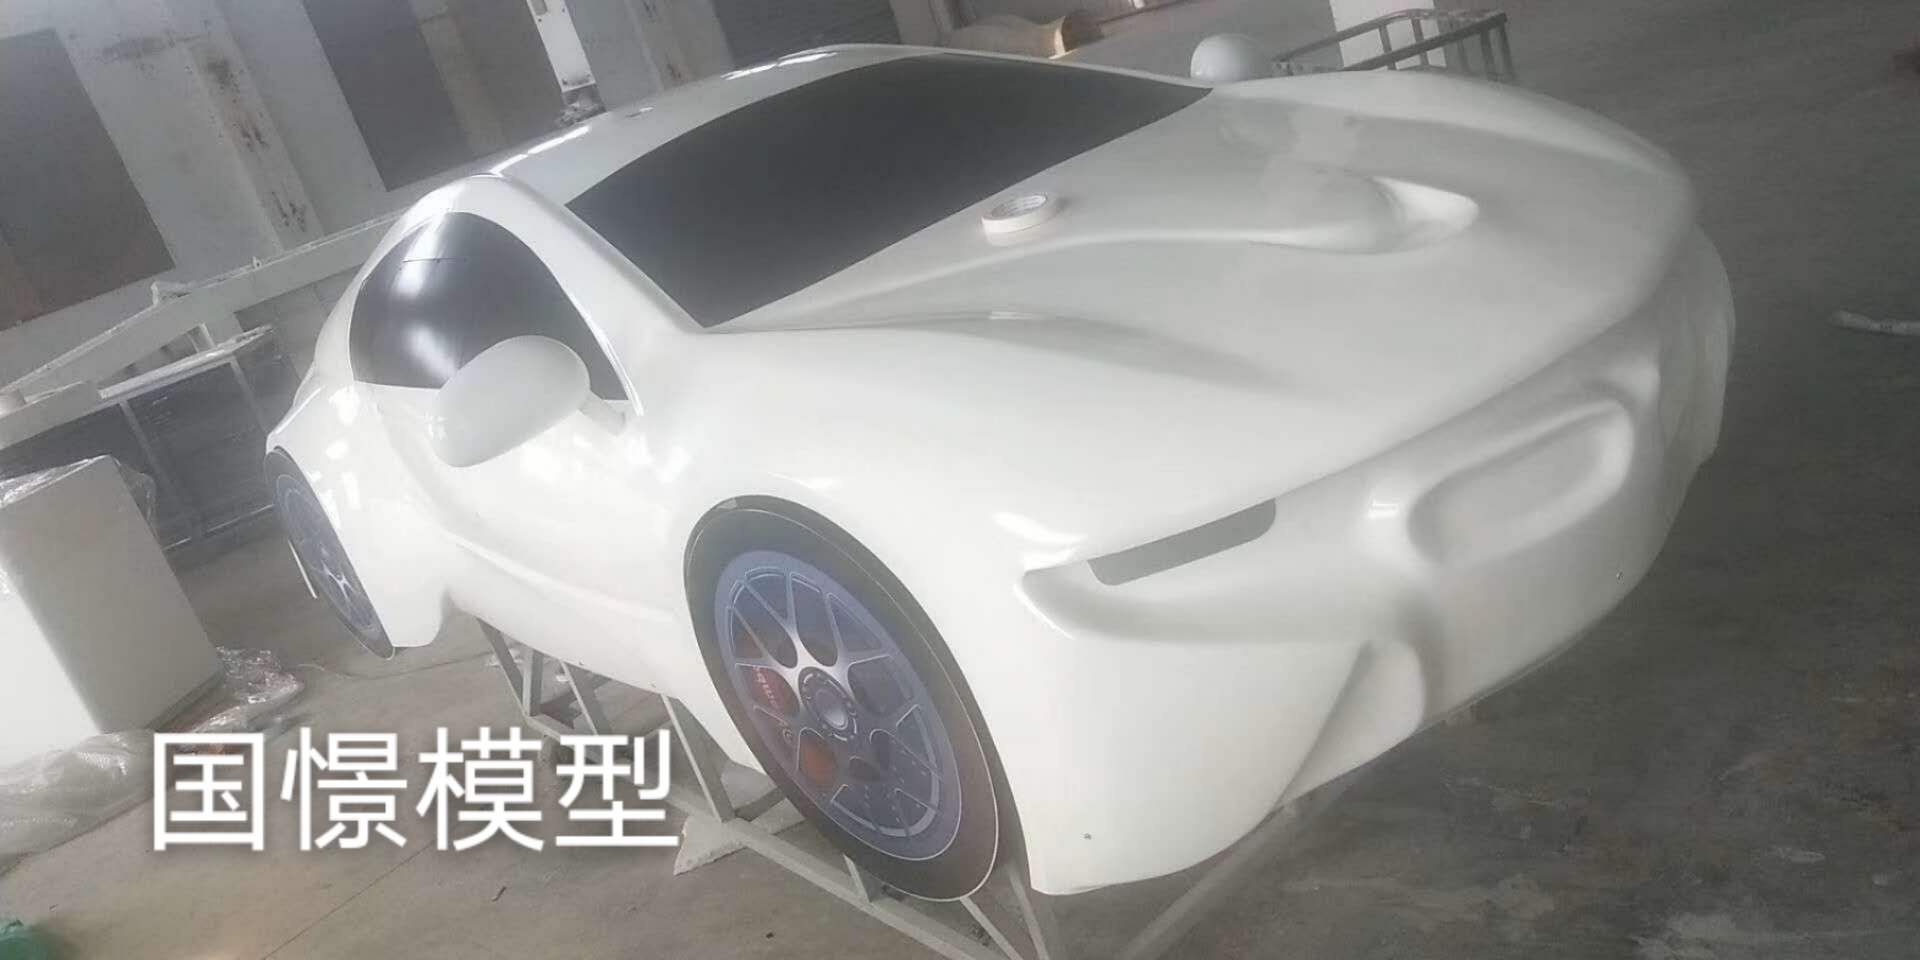 武清区车辆模型